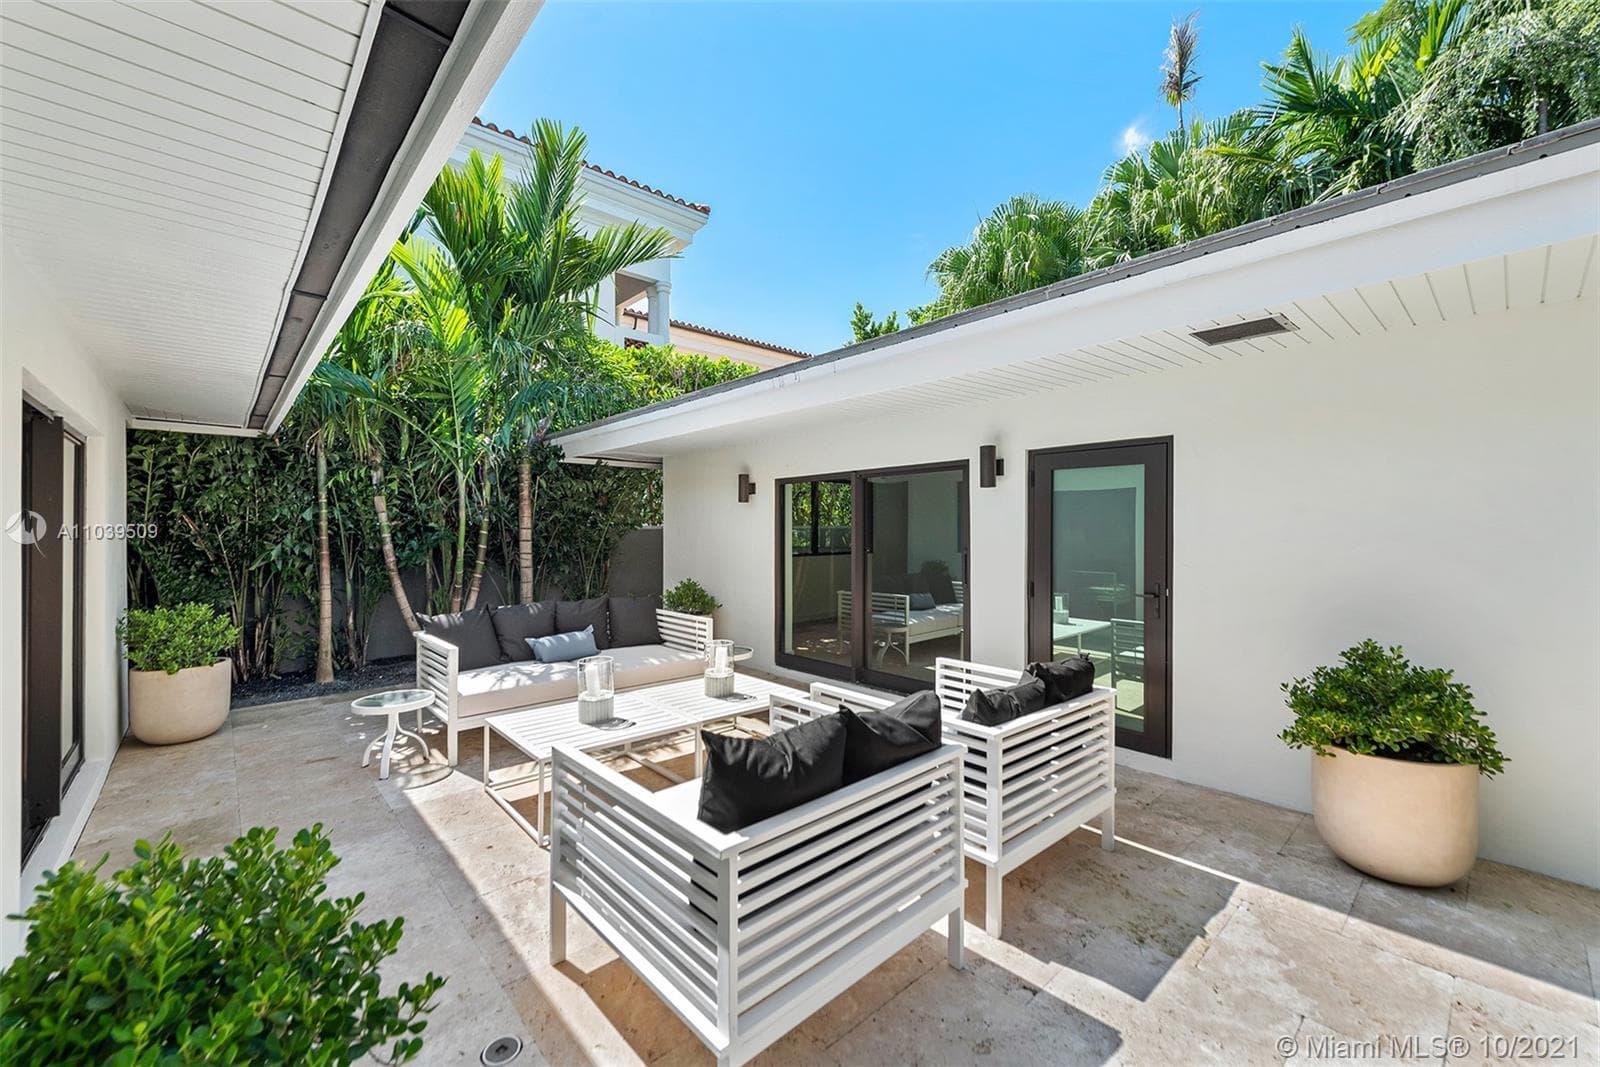 9 Bedroom Condominium For Sale Miami Beach Lp09826 22f69416c2c17600.jpg